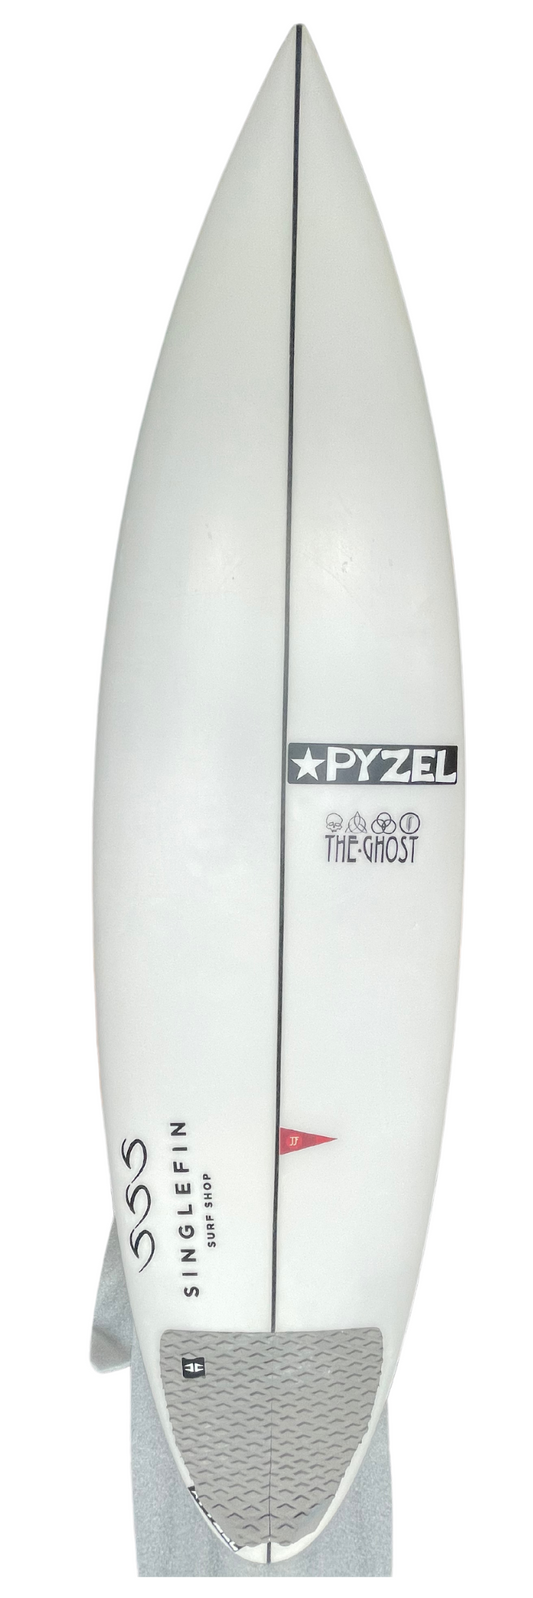 Planche de Surf Pyzel Ghost 6'2 - 32,70lts